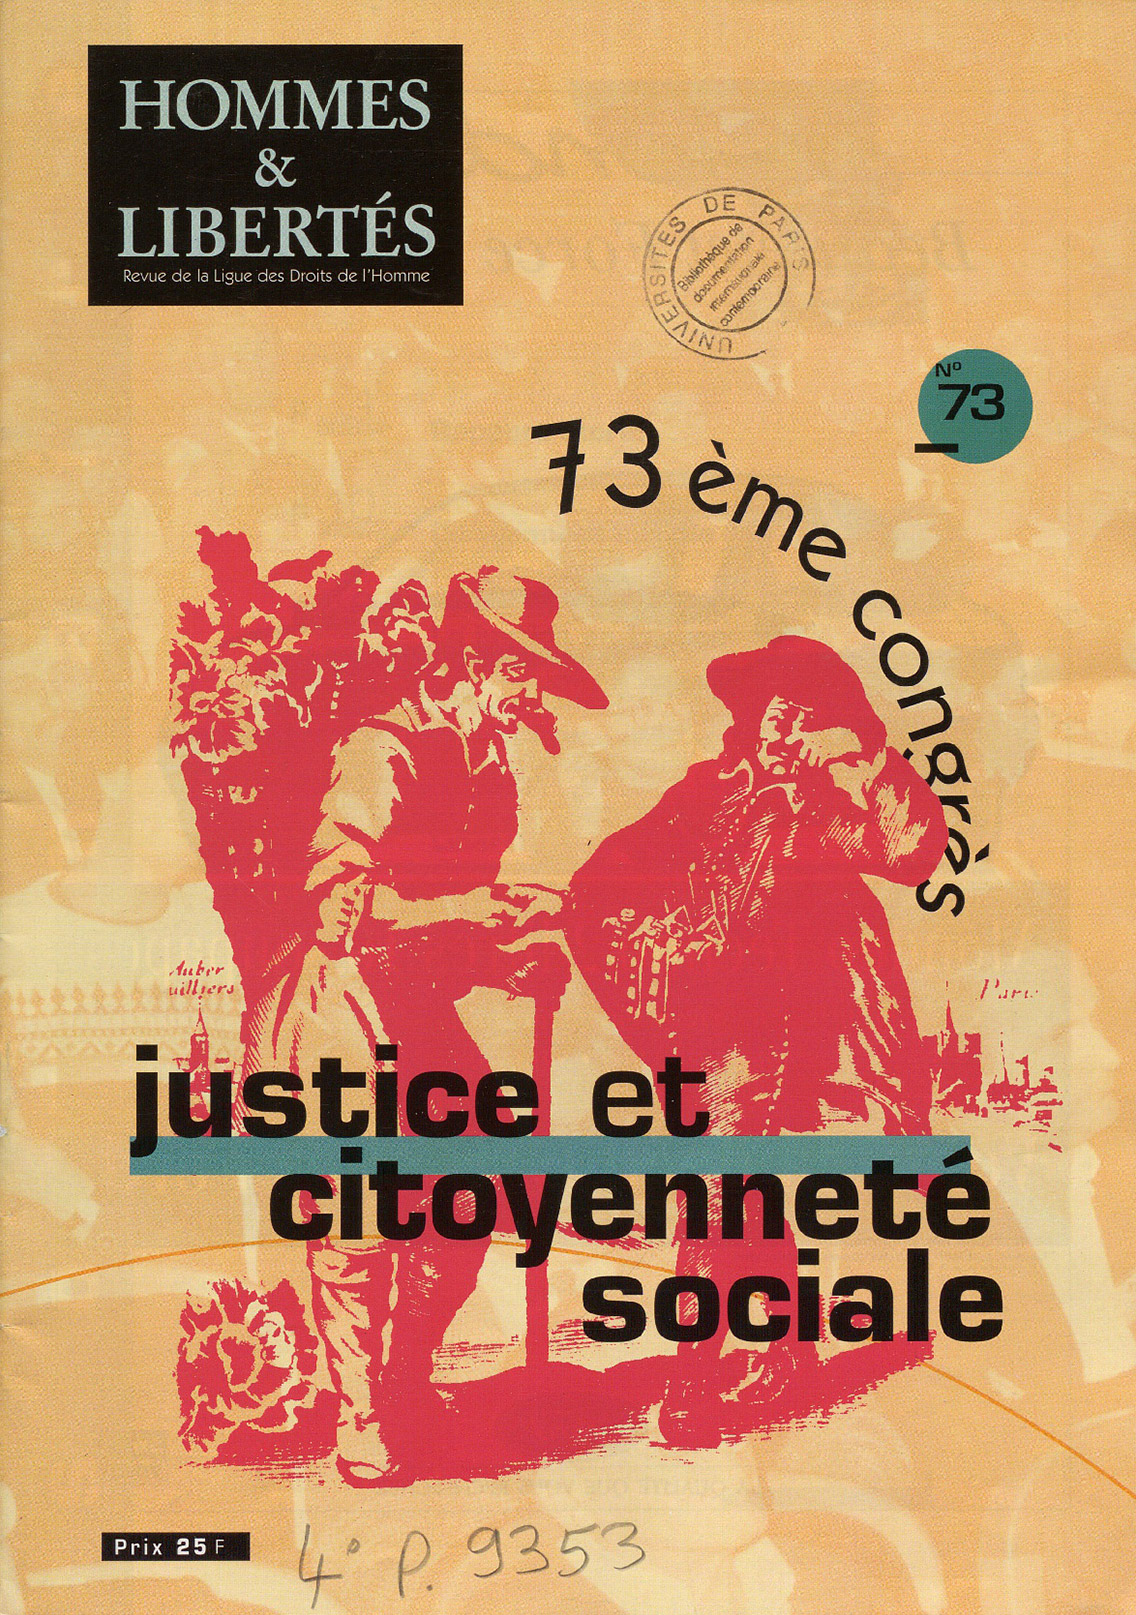 73e Congrès : Justice et citoyenneté sociale in Hommes & Libertés n°73 1993